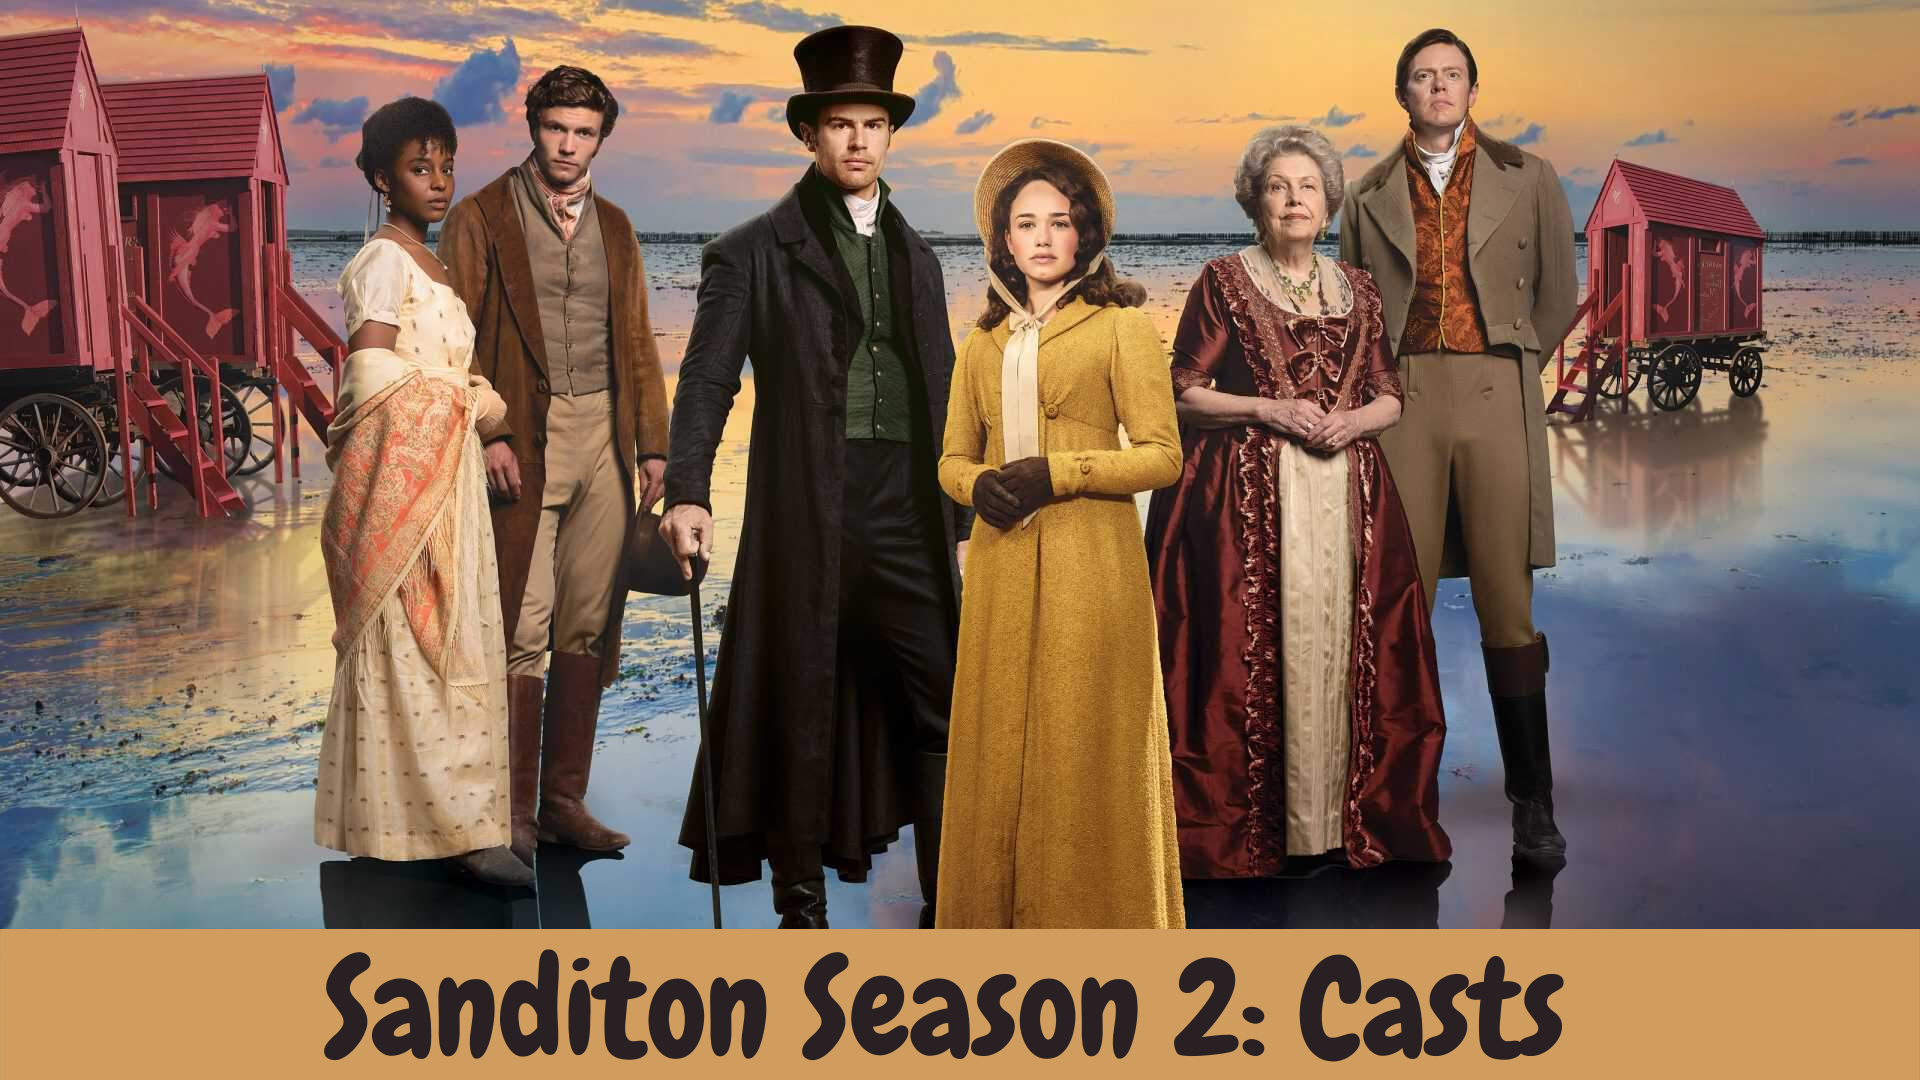 Sanditon Season 2: Casts